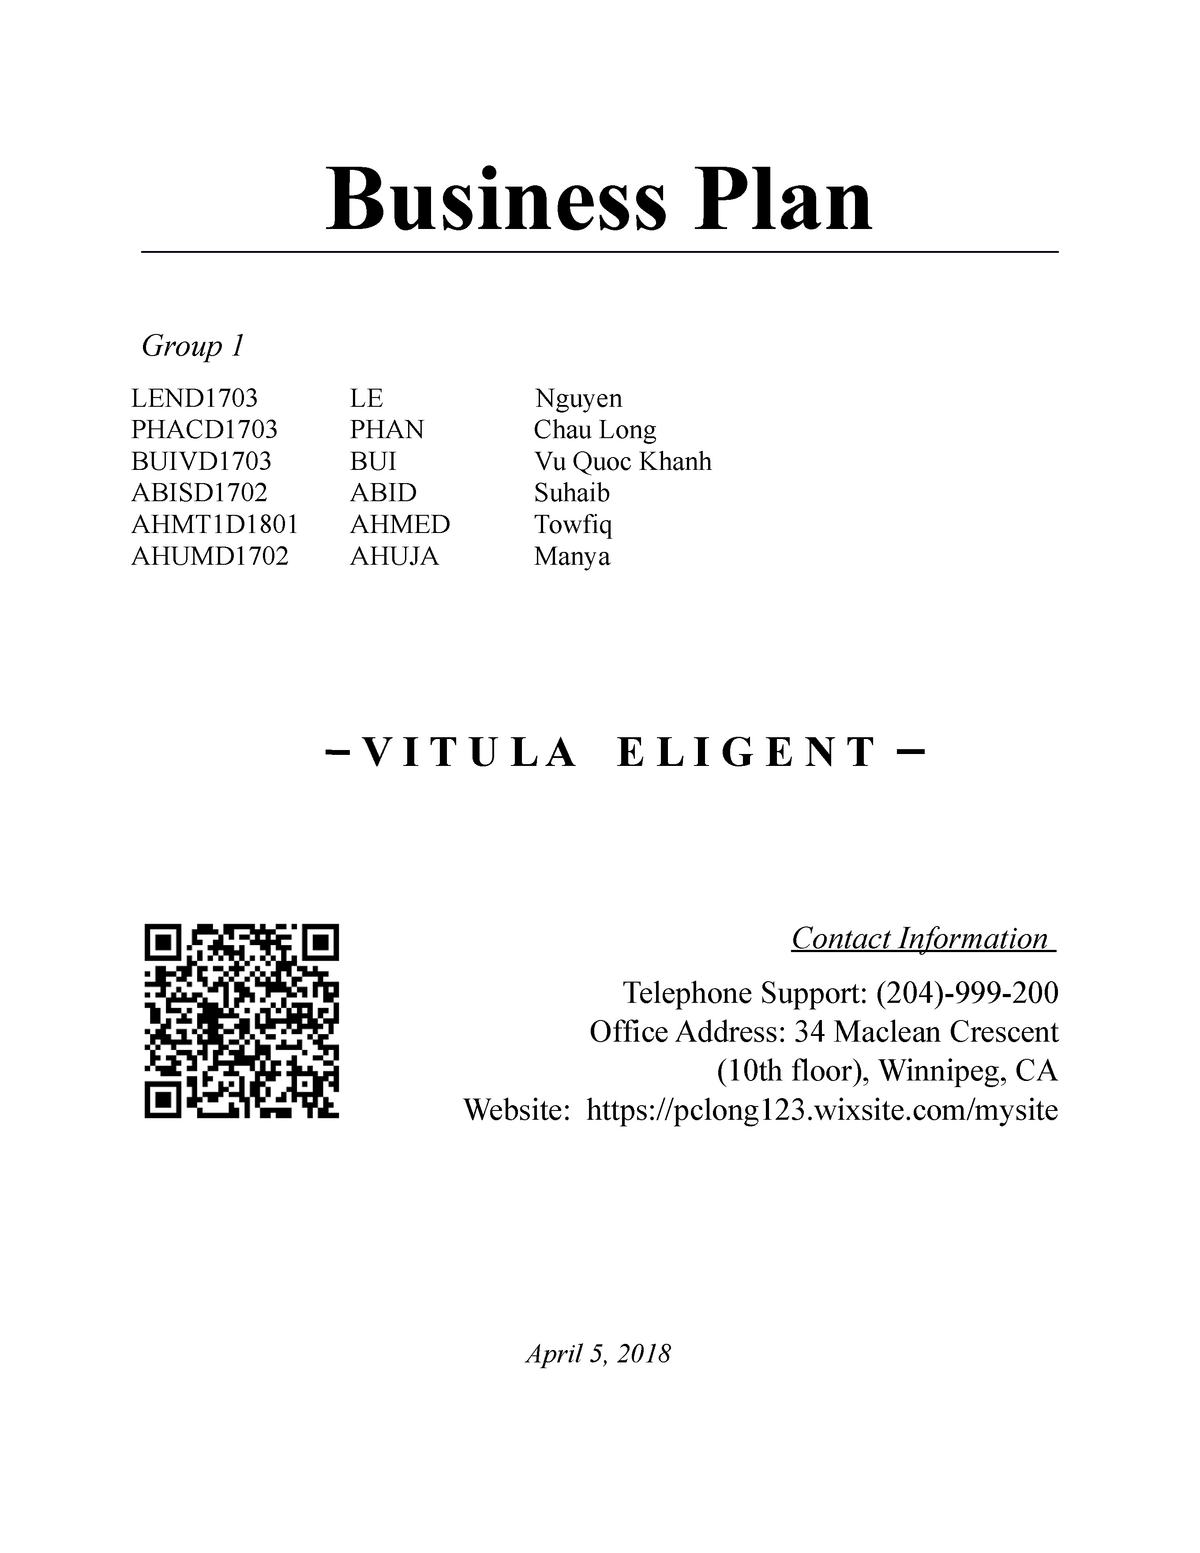 business plan help winnipeg